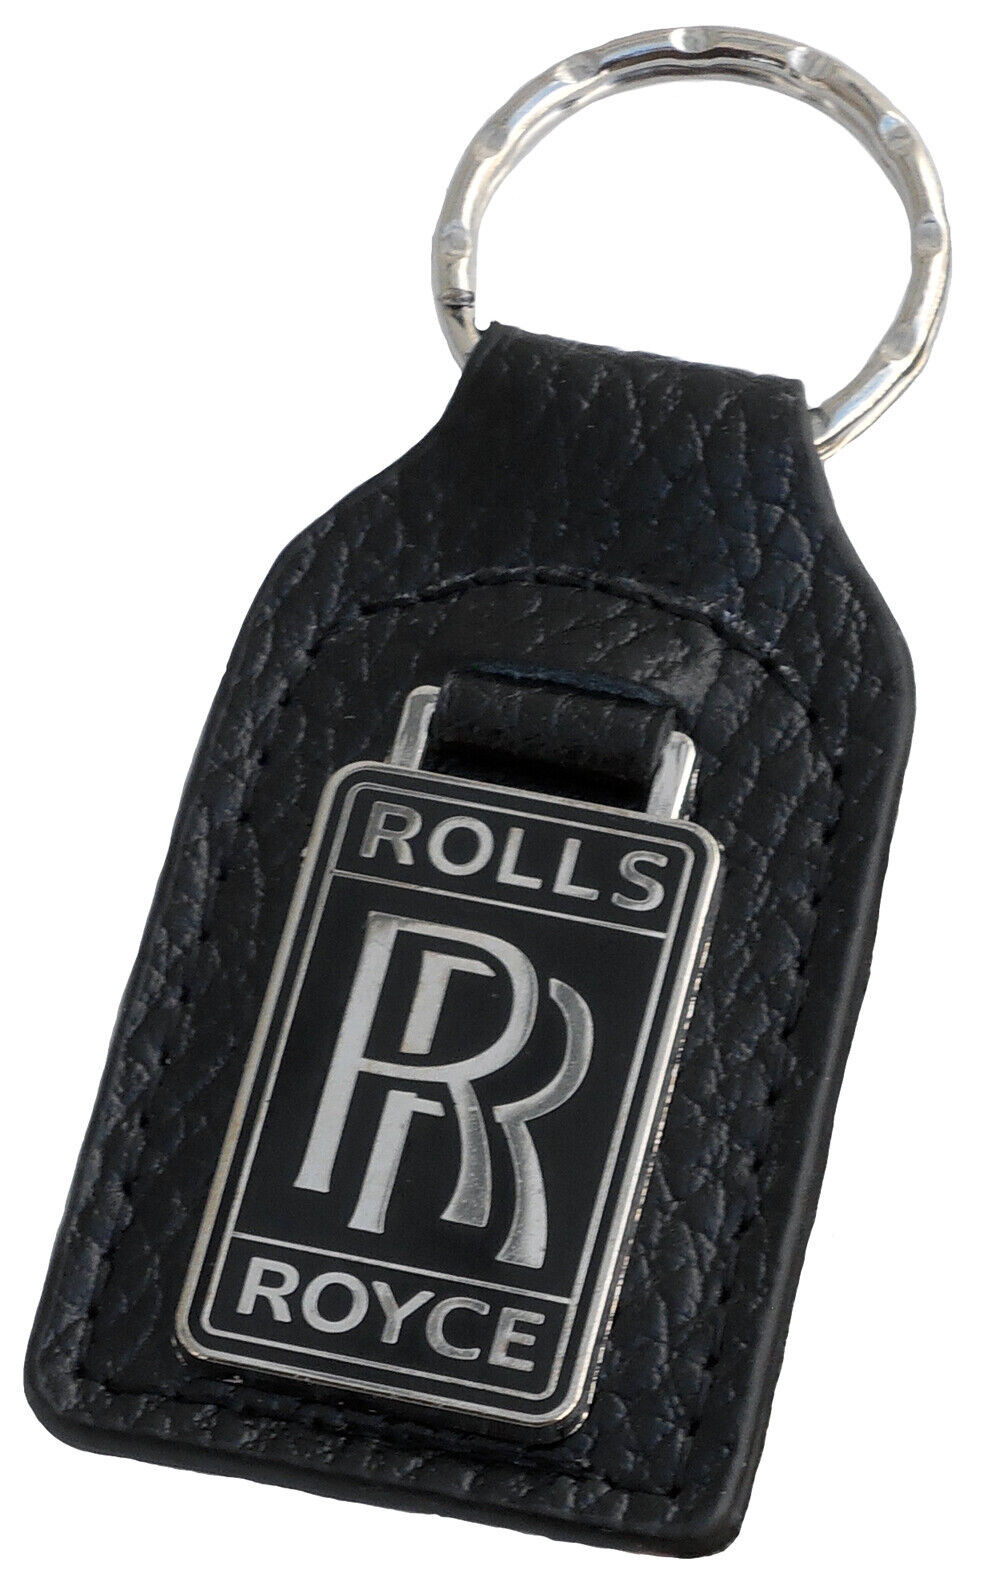 Rolls Royce leather and enamel car key ring / fob